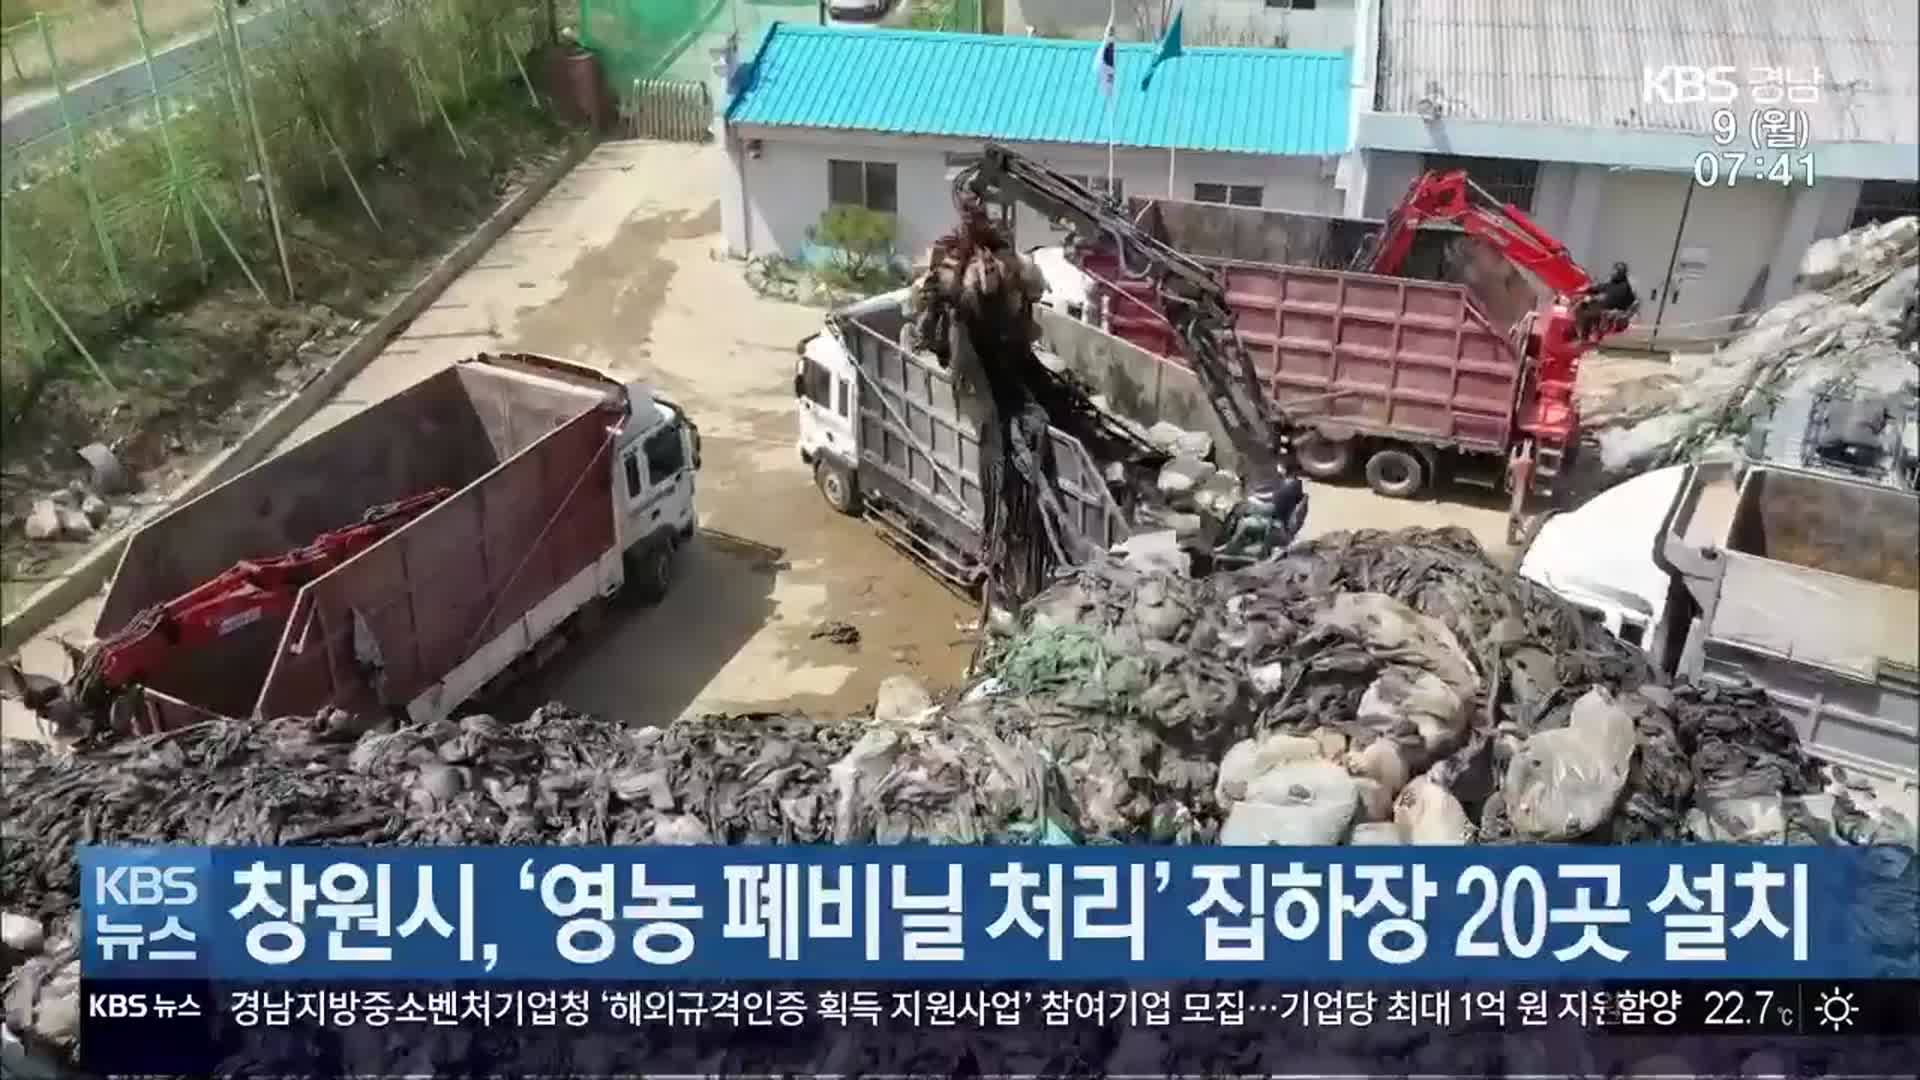 창원시, ‘영농 폐비닐 처리’ 집하장 20곳 설치